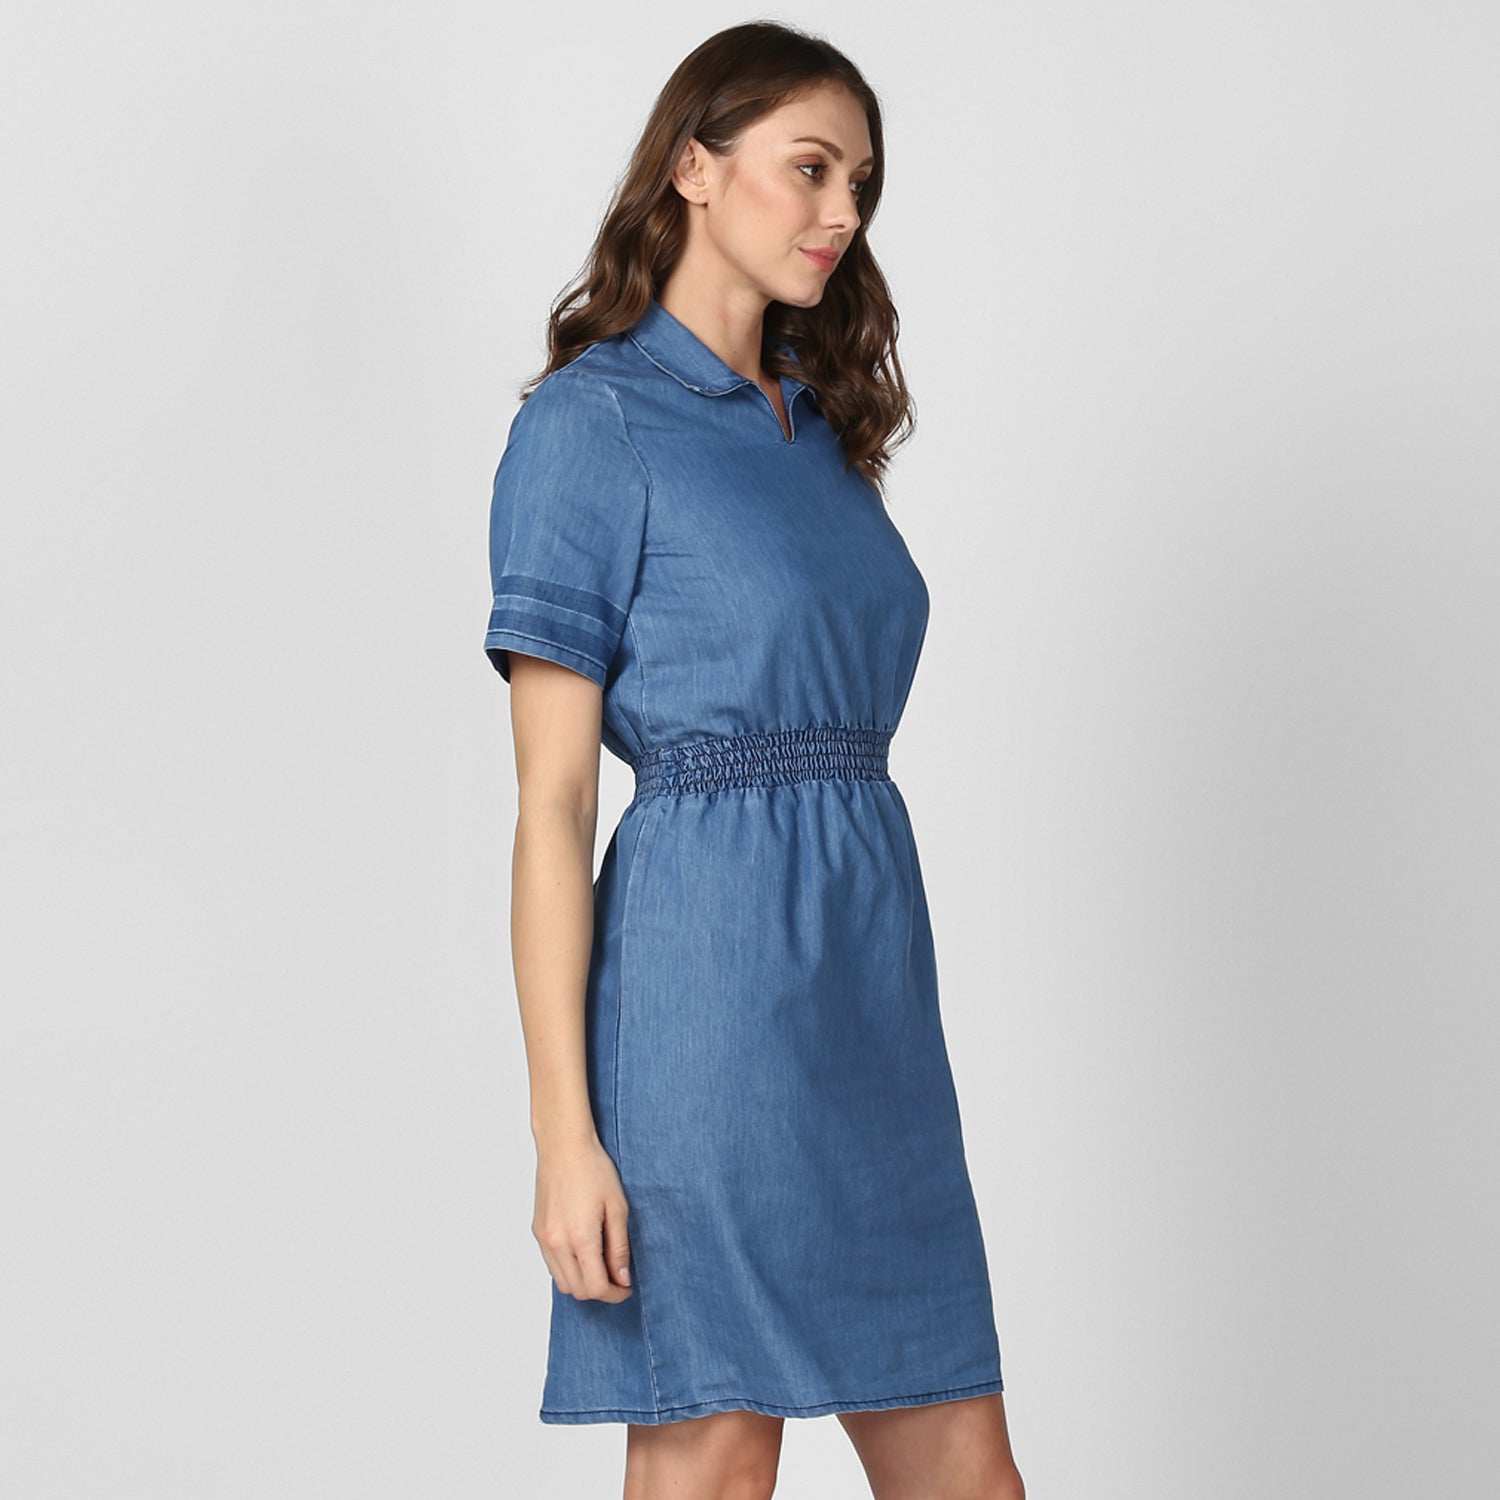 Women's Blue Denim Dress with Smocked waistline - StyleStone